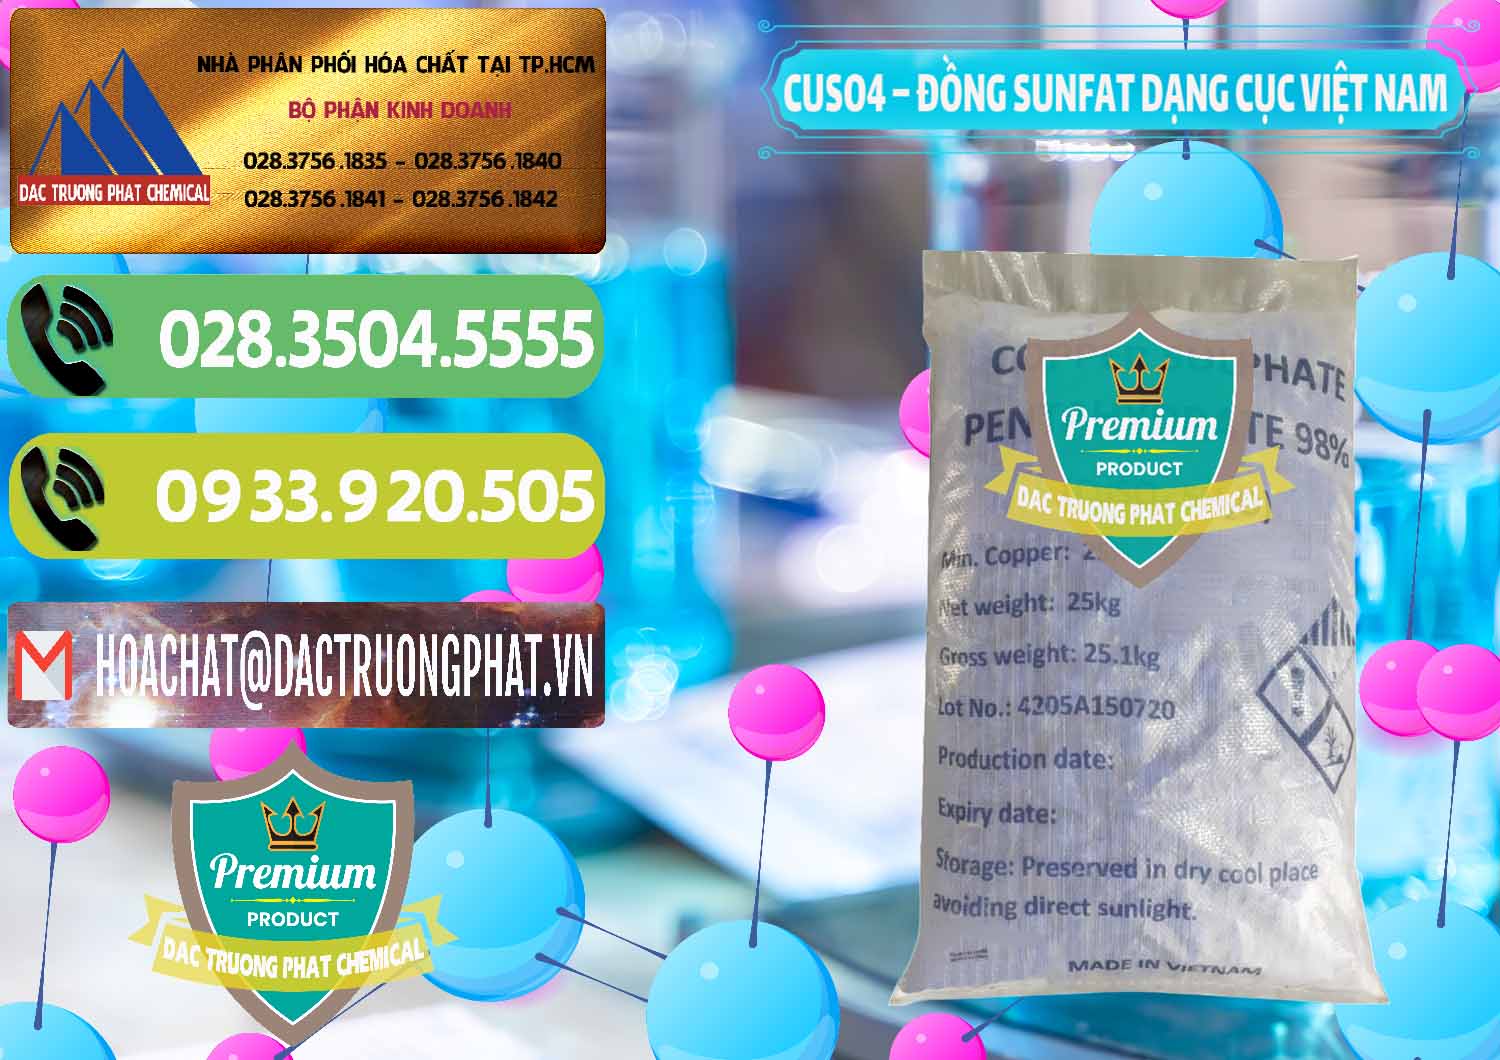 Cty kinh doanh _ bán CUSO4 – Đồng Sunfat Dạng Cục Việt Nam - 0303 - Công ty cung cấp ( phân phối ) hóa chất tại TP.HCM - hoachatmientay.vn